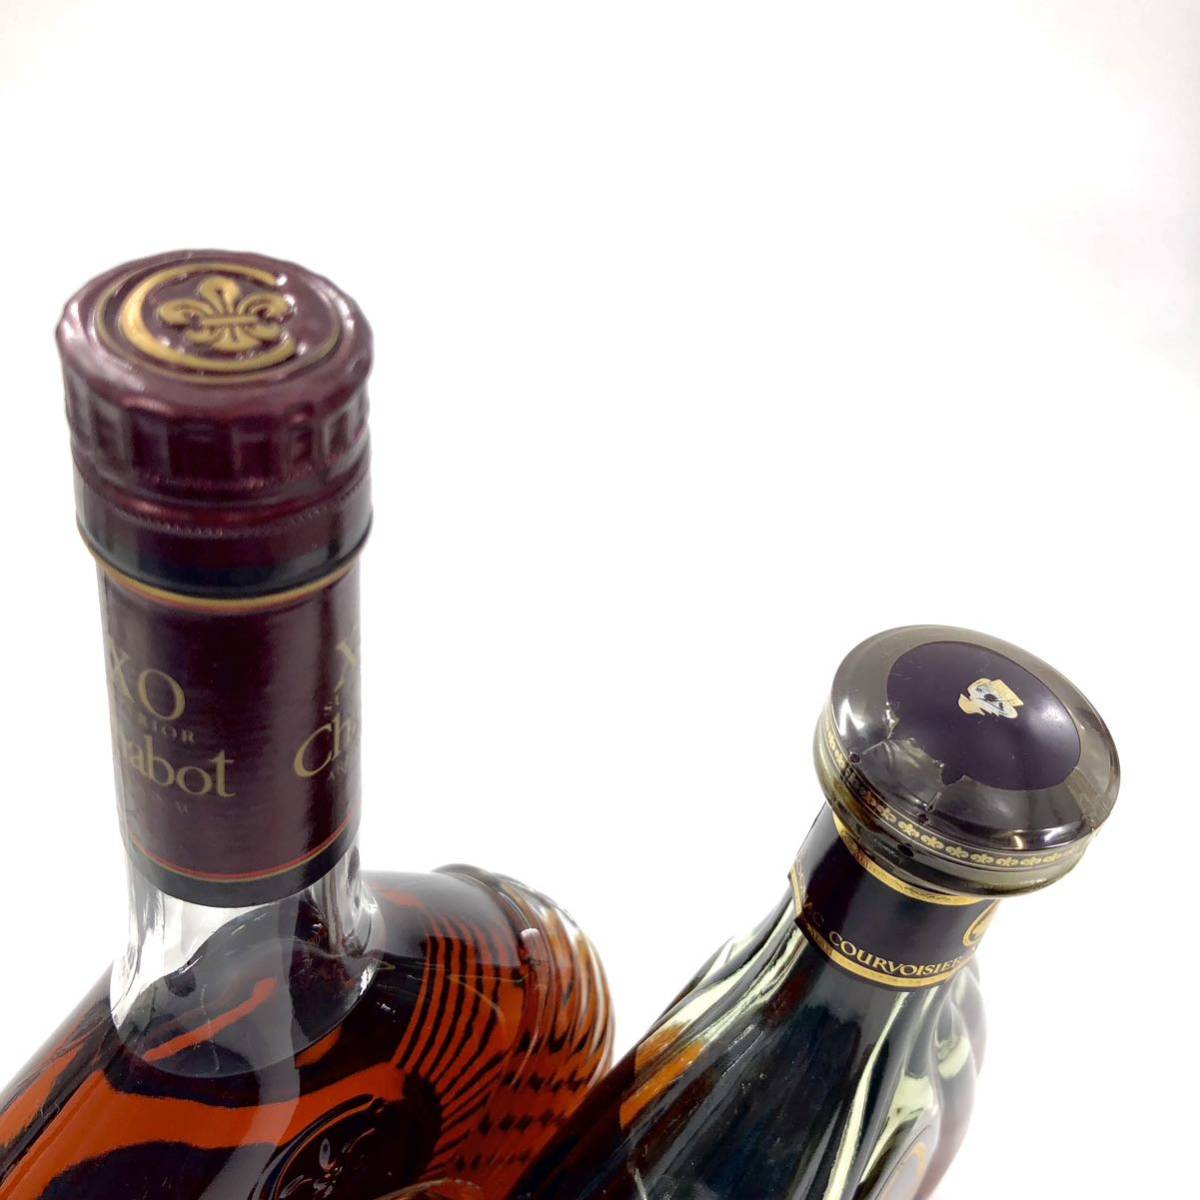 R-103 ブランデー 古酒 XO マーテルスプリーム シャボー アルマニャック コニャック ブランデーまとめ 箱付き 5本セット 1715年_画像9